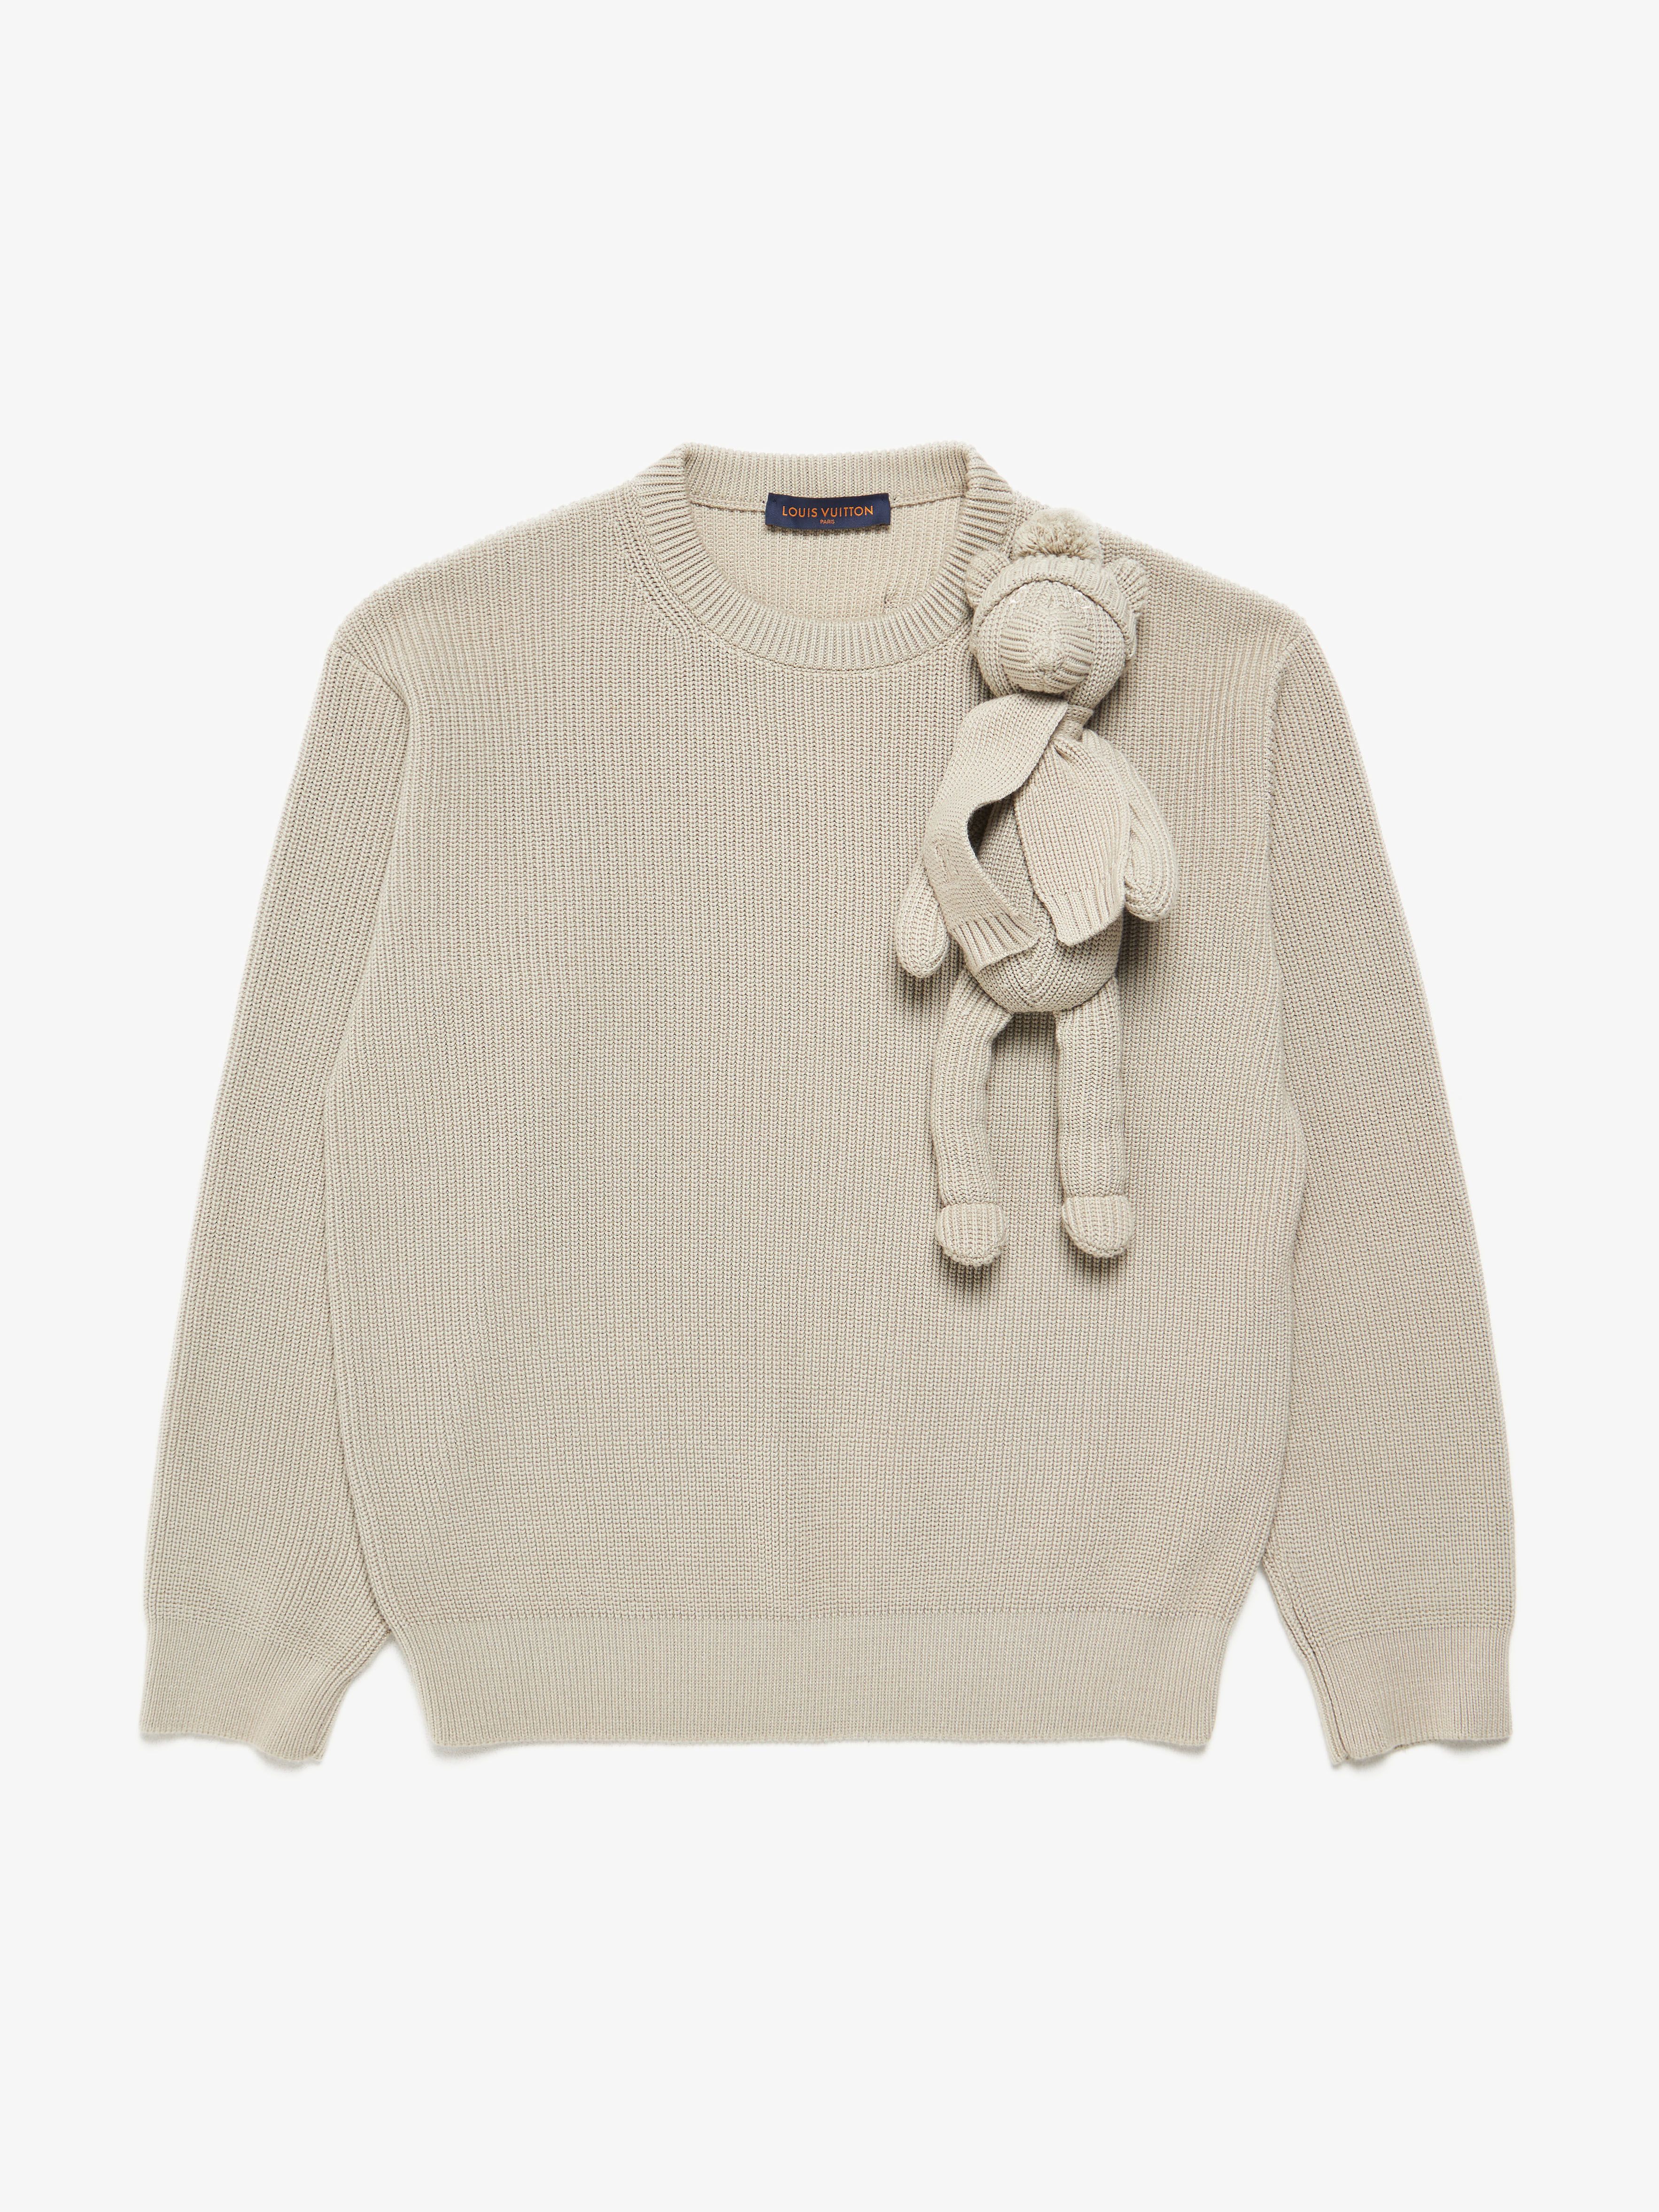 Sweatshirt Louis Vuitton Grey size XXL International in Cotton